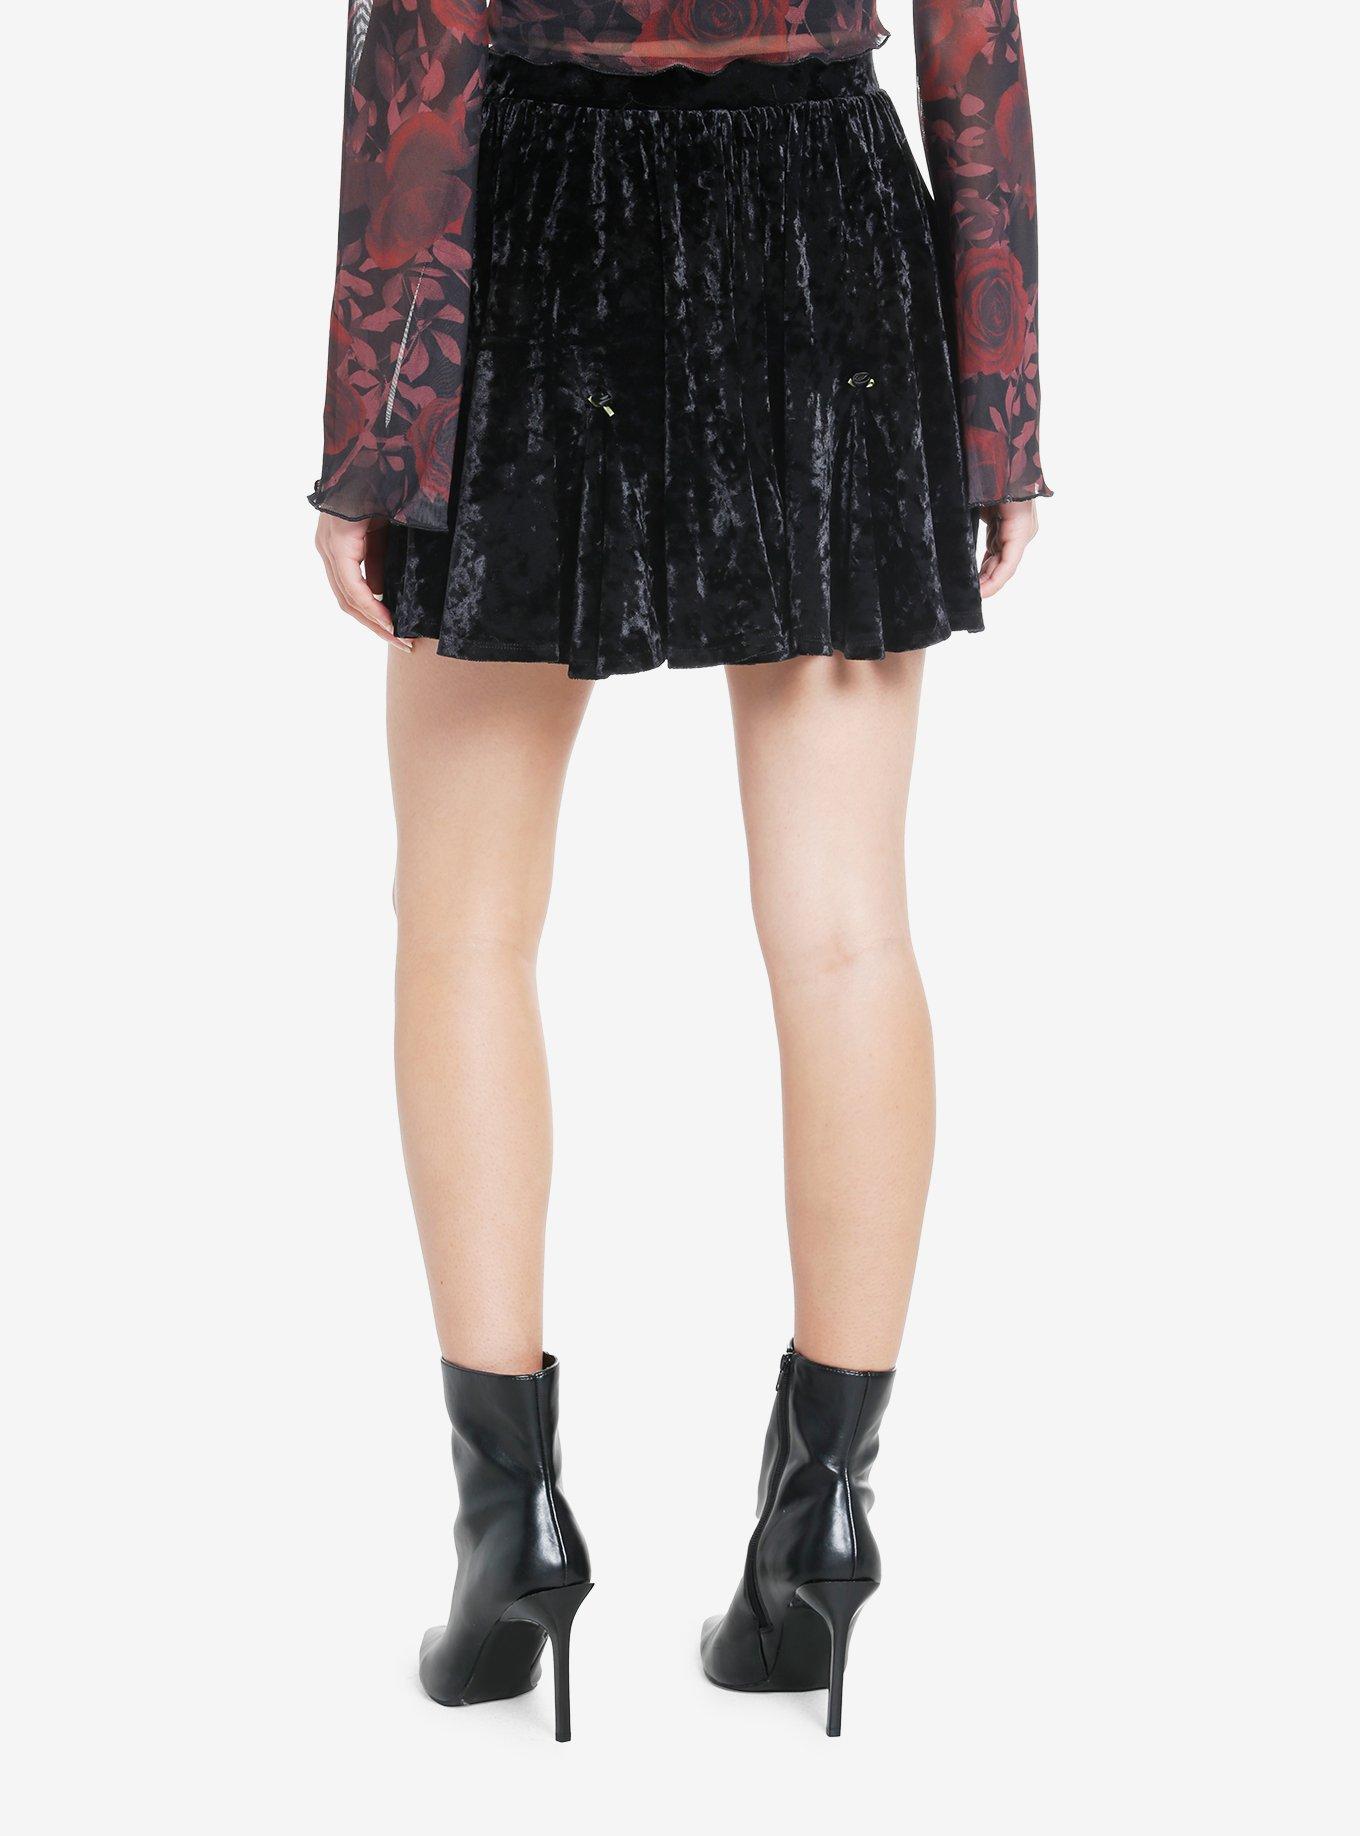 Cosmic Aura Black Velvet Rosette Godet Mini Skirt, BLACK, alternate